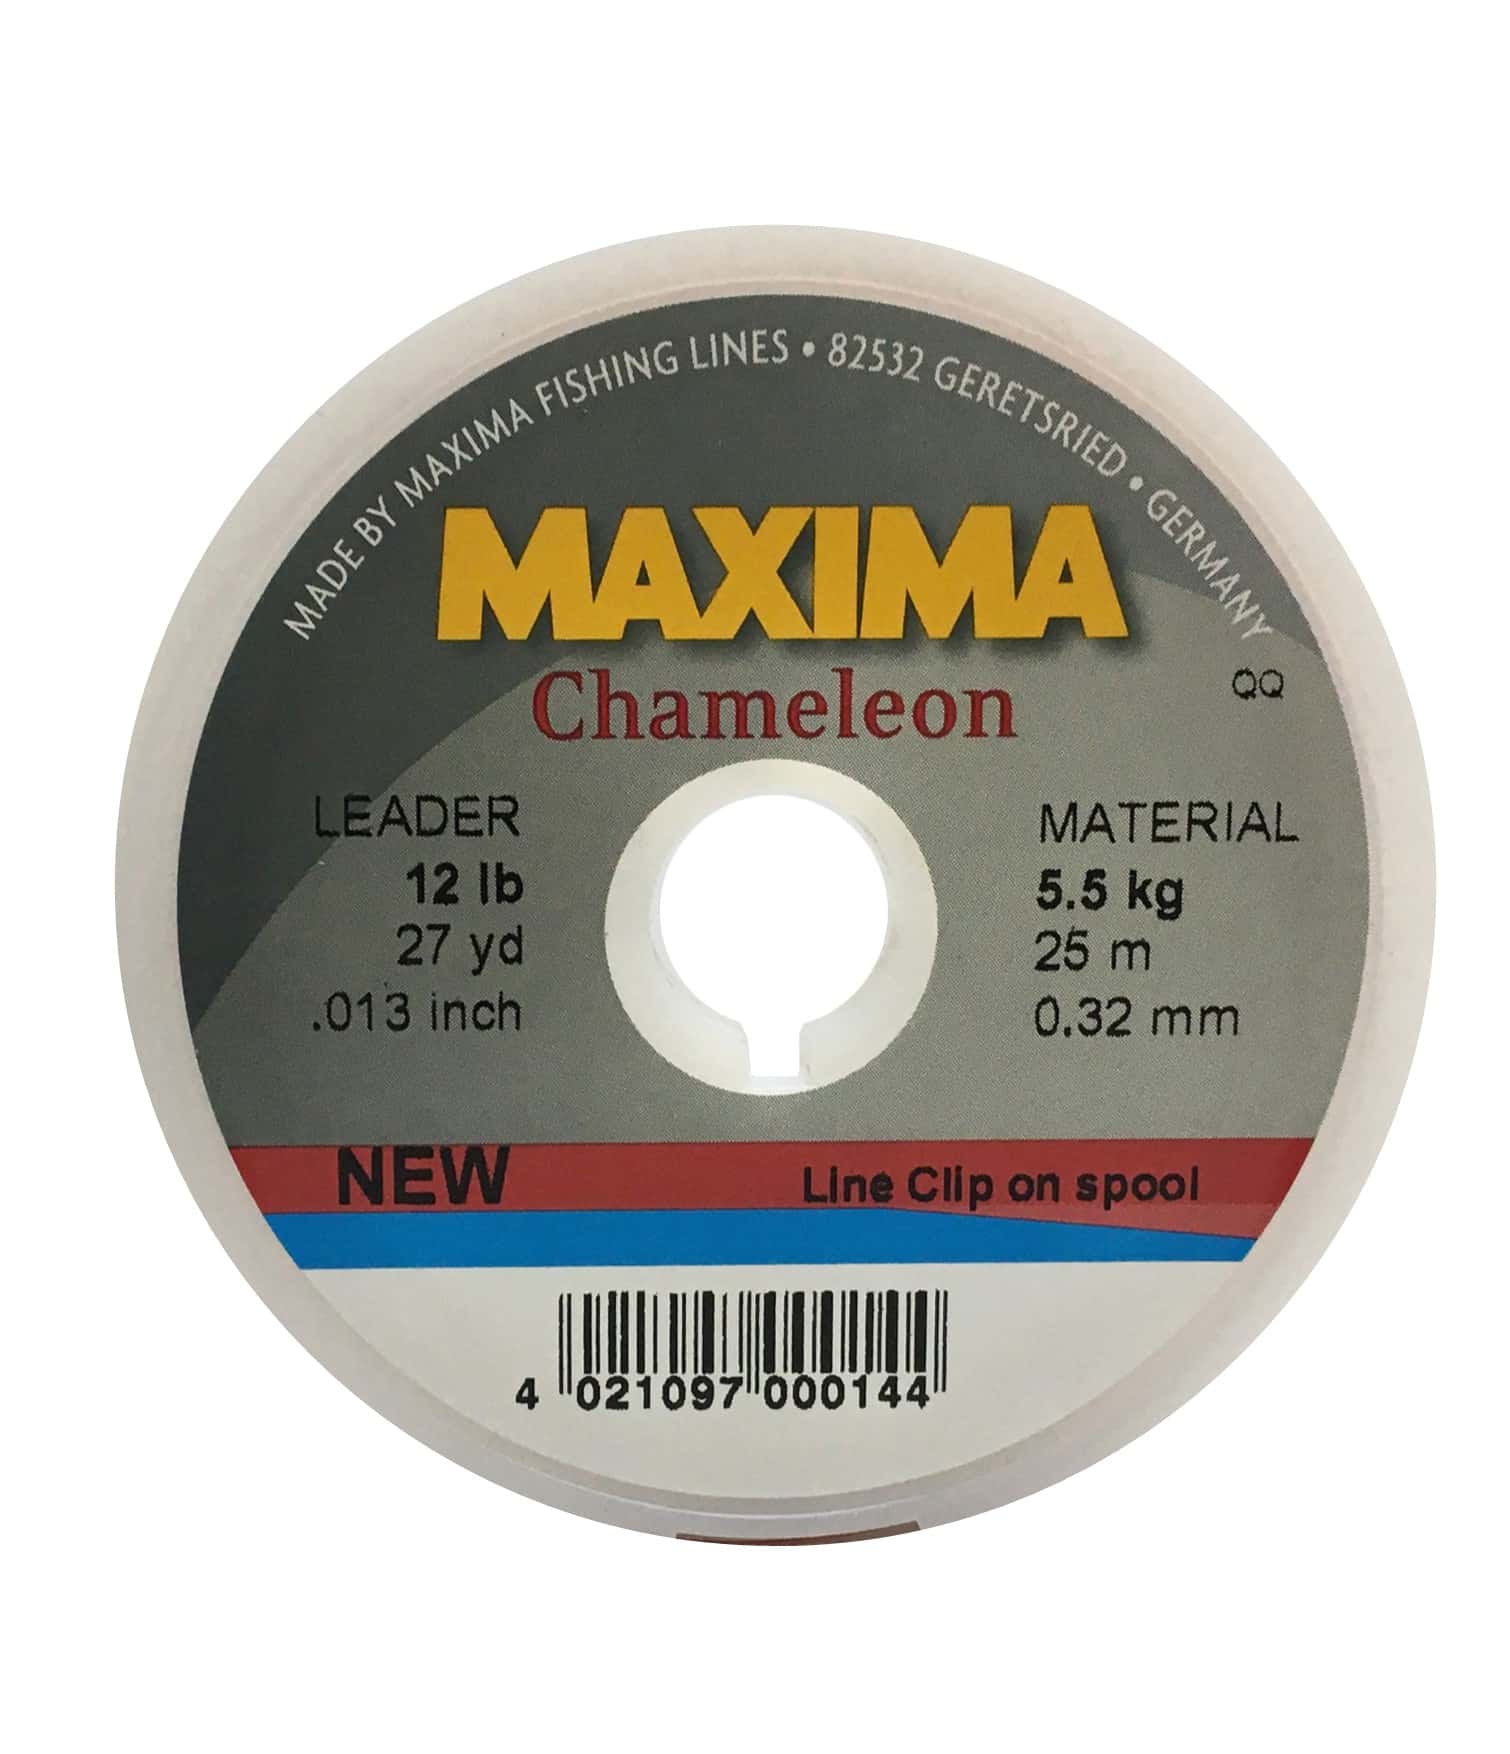 Maxima Chameleon Leader Wheel 25 lb